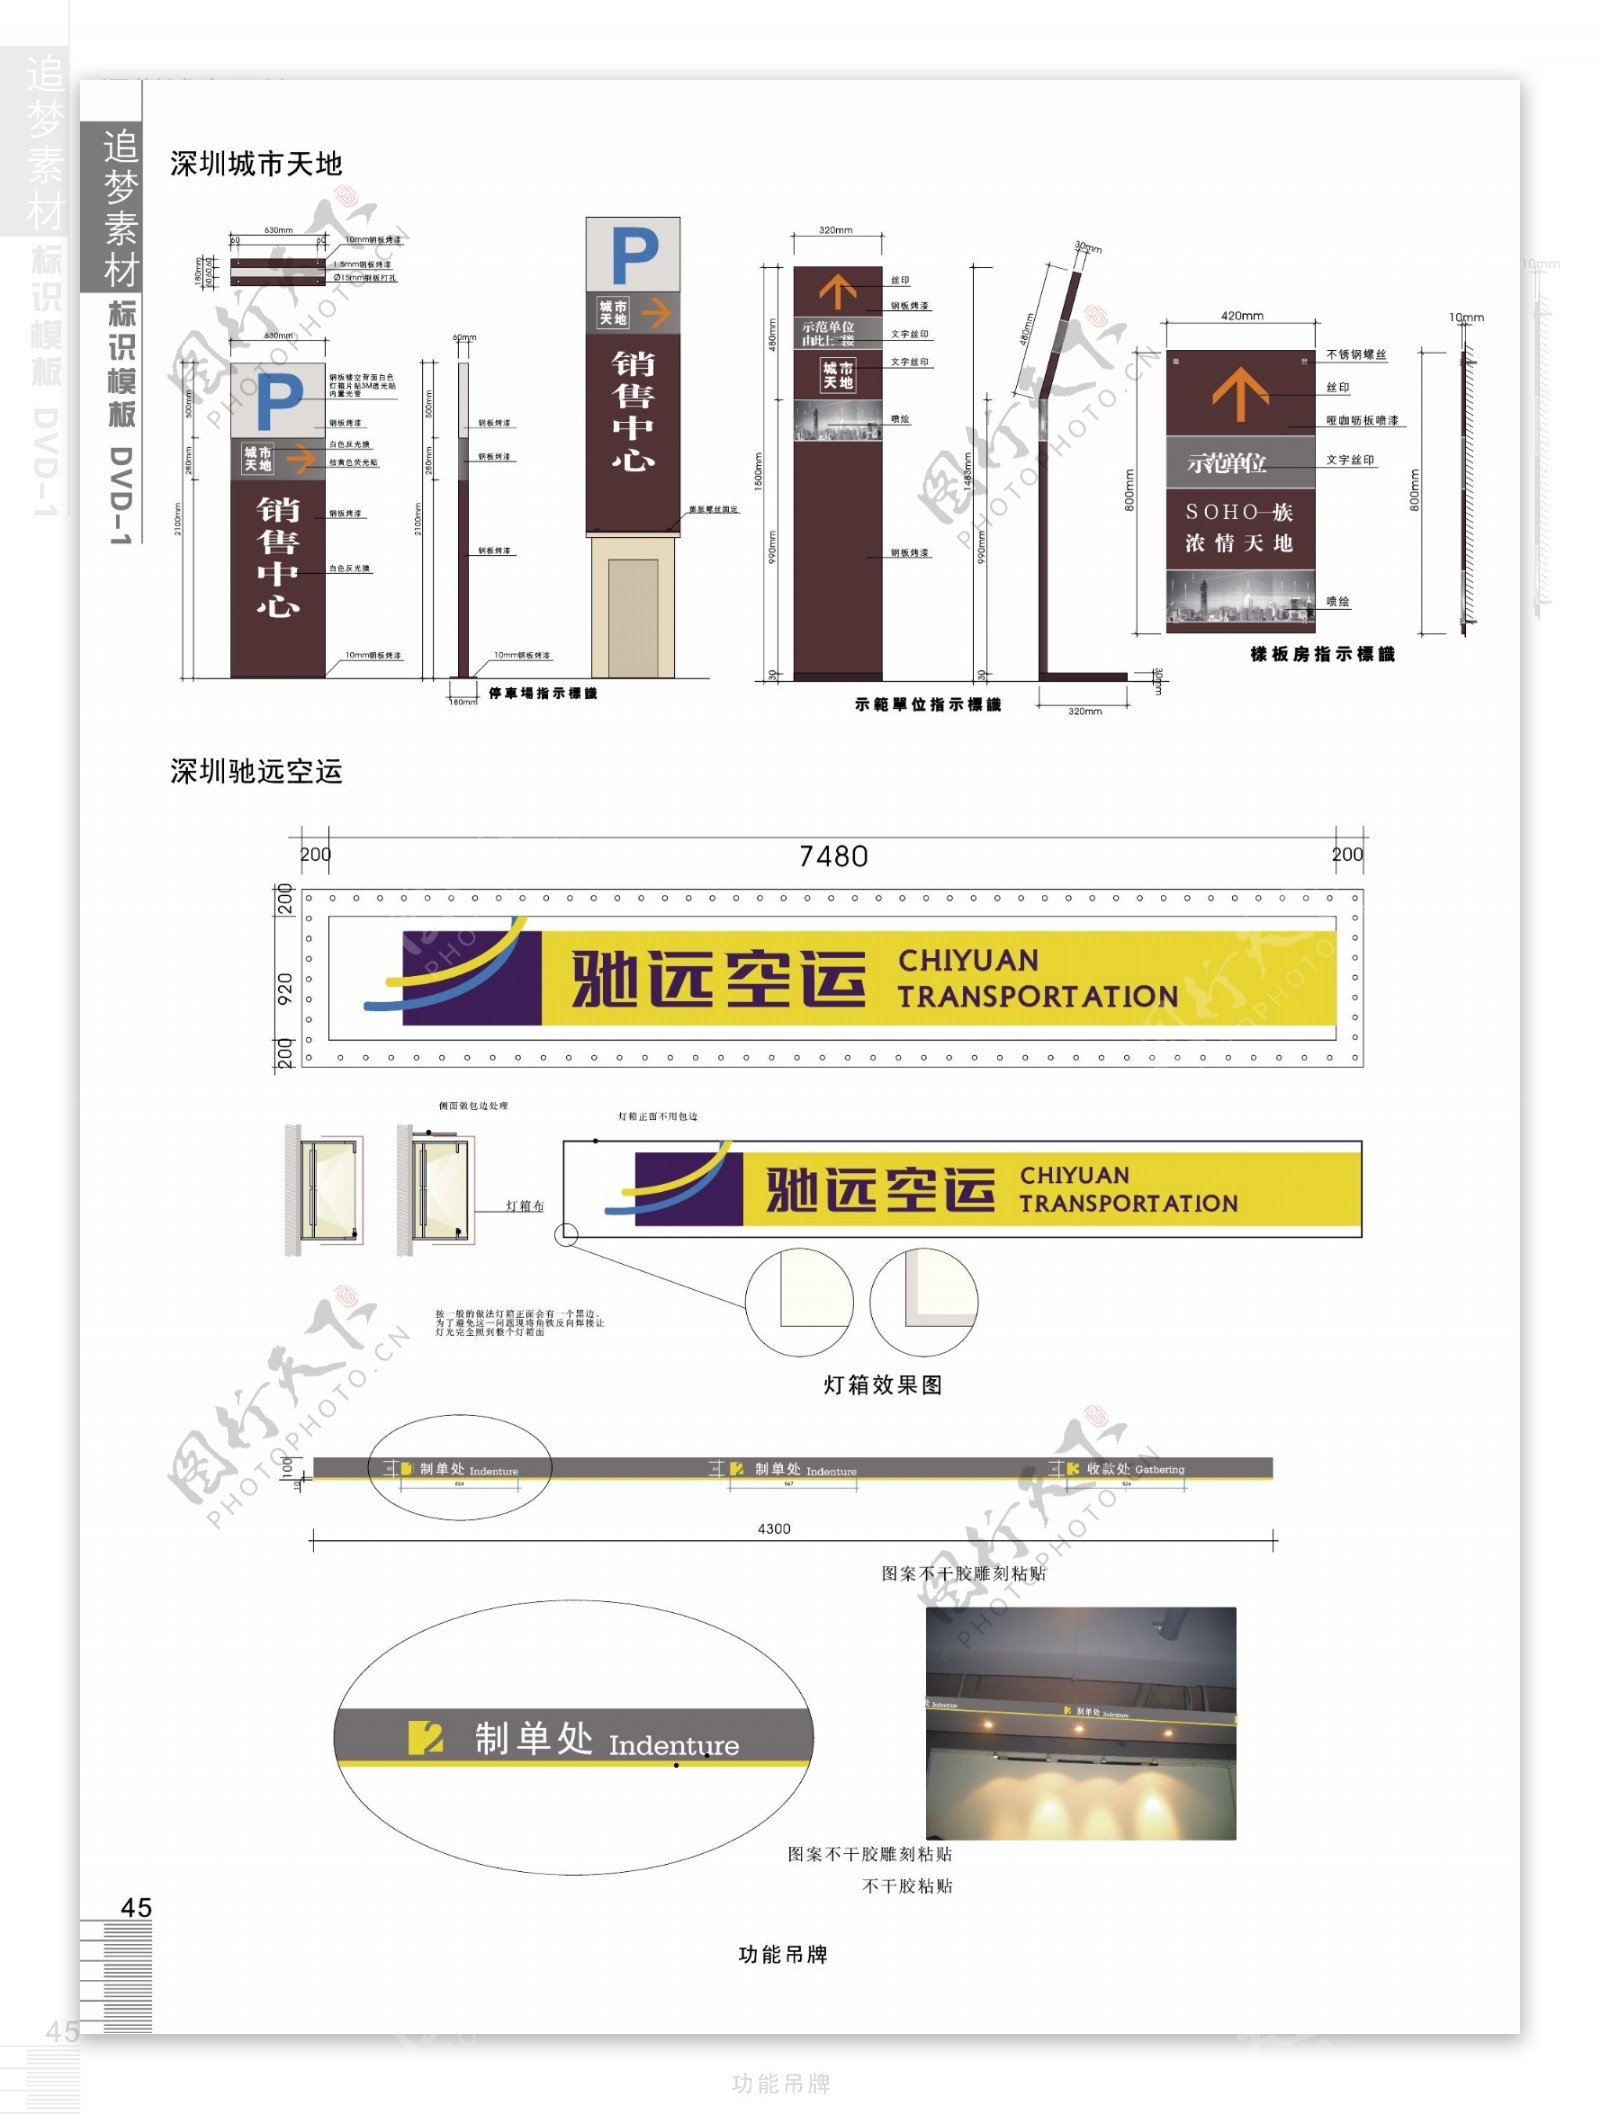 深圳售楼中心标识系统标牌设计制作图